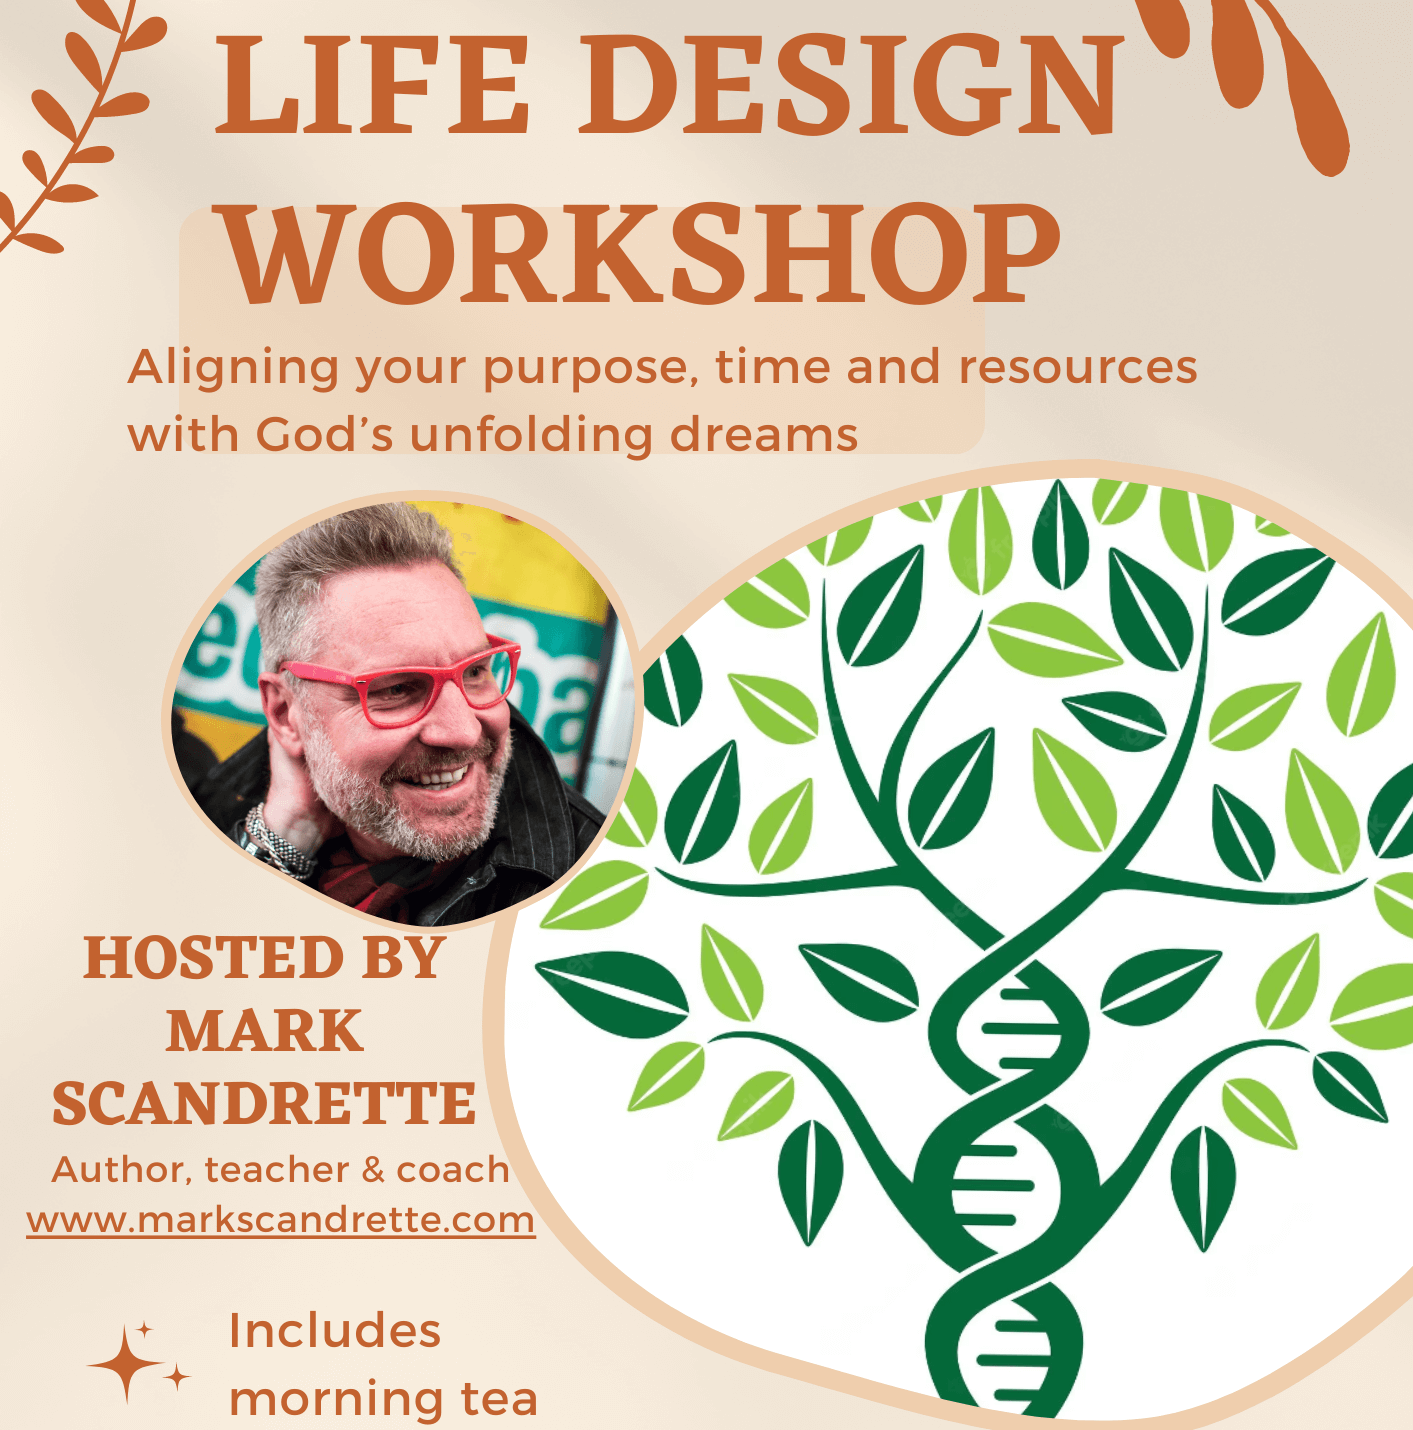 Life Design Workshop promotion